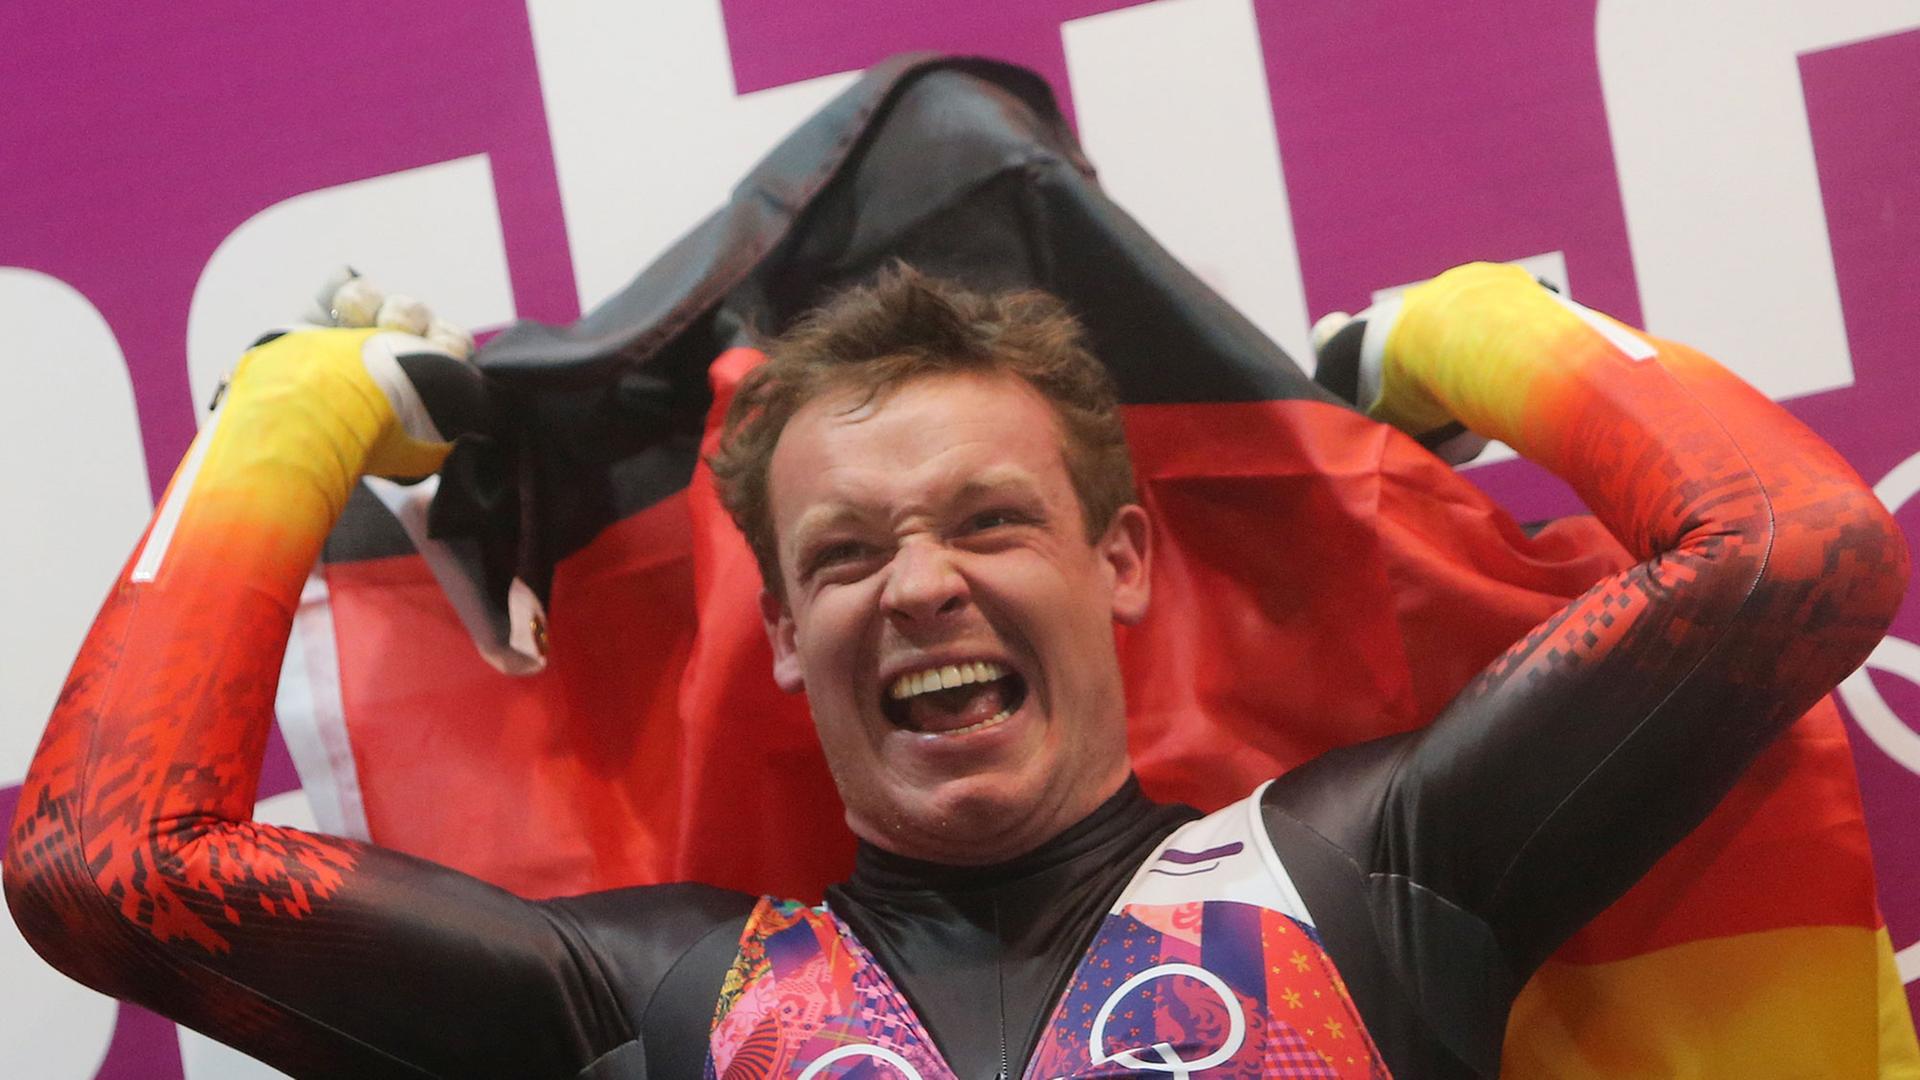 Felix Loch bejubelt sein zweites Olympia-Gold in Sotschi.